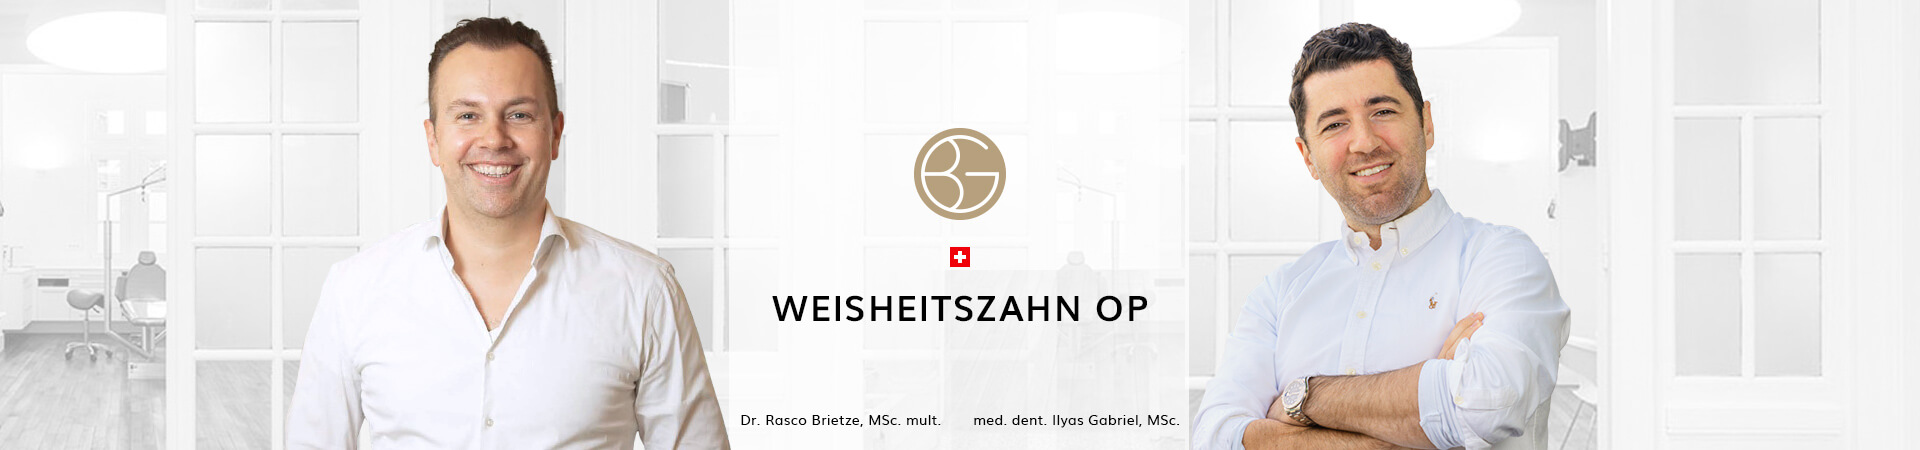 Weisheitszahn-OP, Zahnärzte Ebmatingen, Dr. Brietze & Dr. Gabriel 